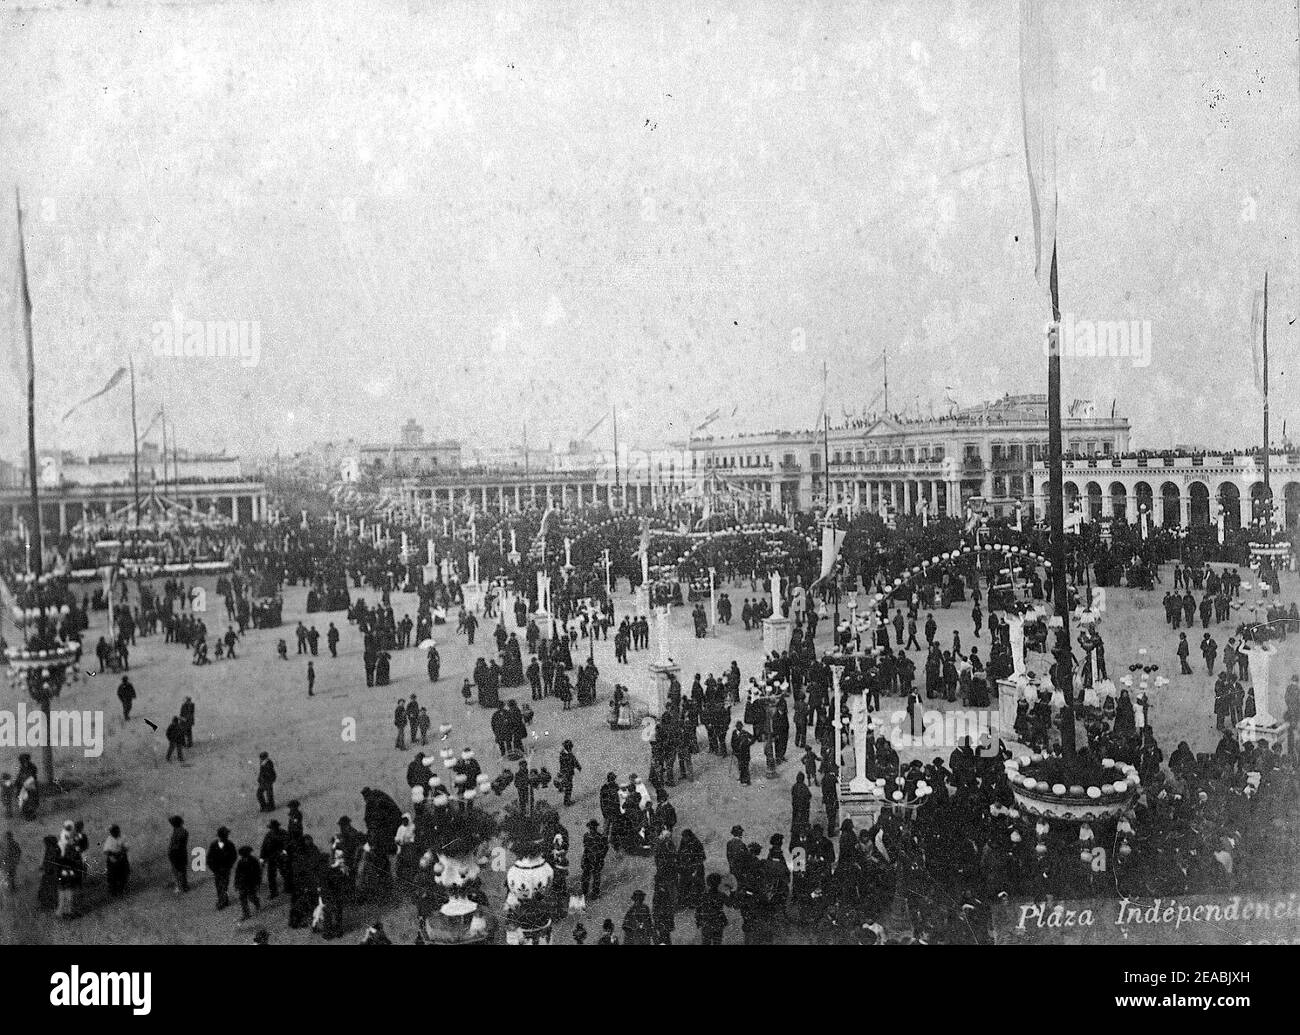 Neg. 39. Plaza independencia, 25 de agosto de 1897. (2). Stock Photo